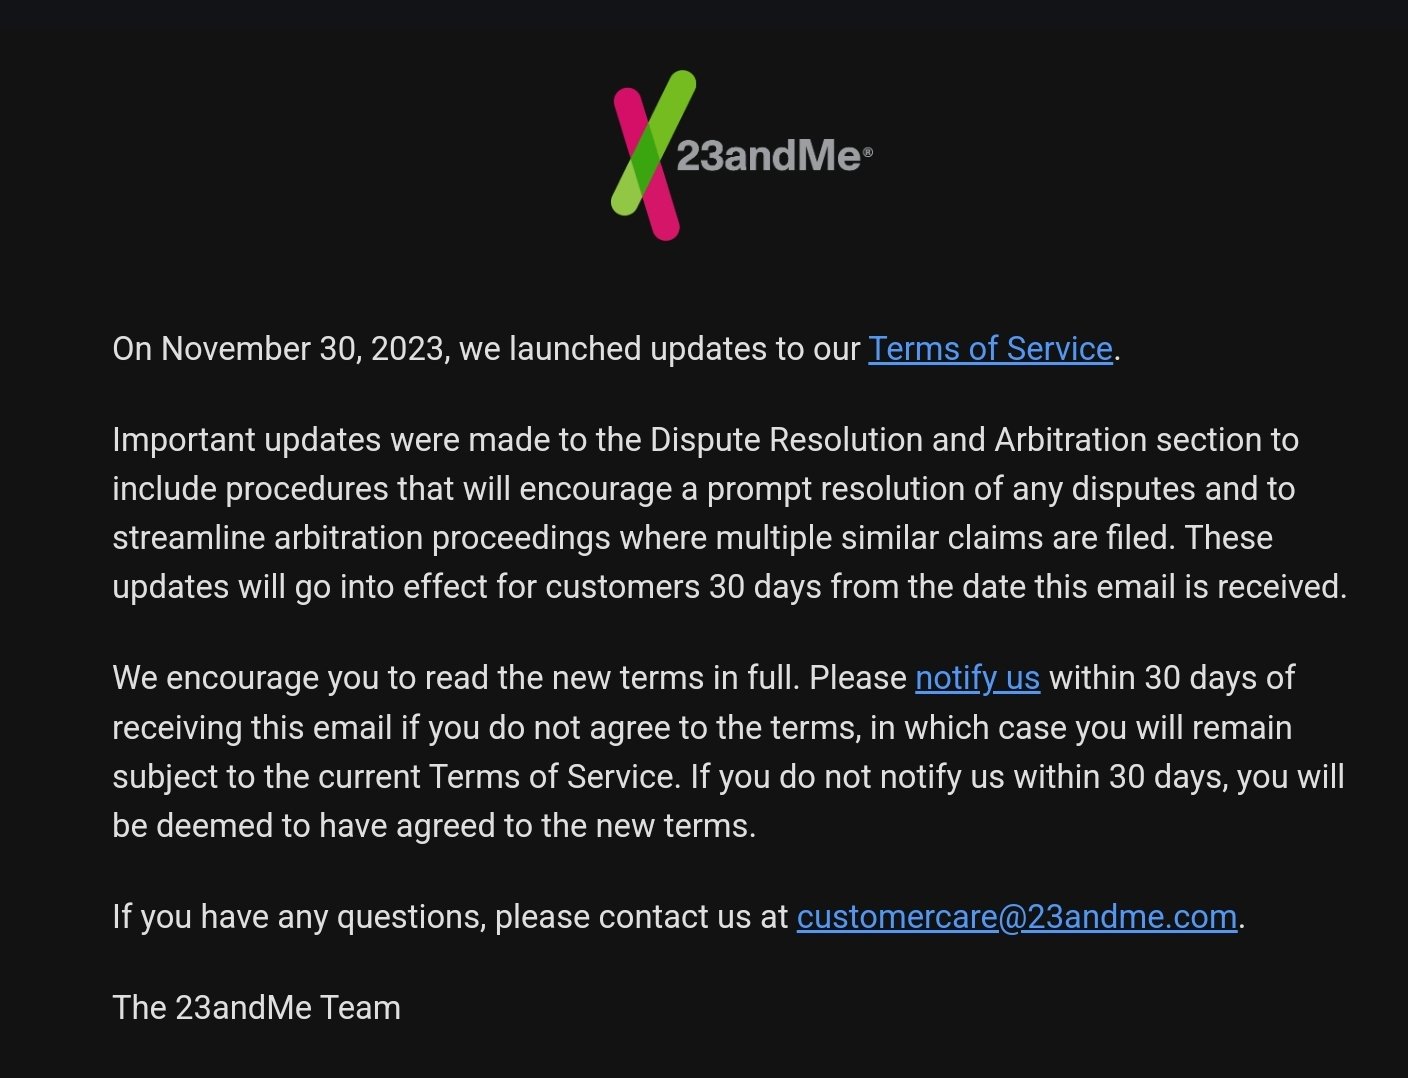 23andMe'nin Hizmet Koşulları değişiklikleriyle ilgili müşterilerine gönderdiği e-posta.